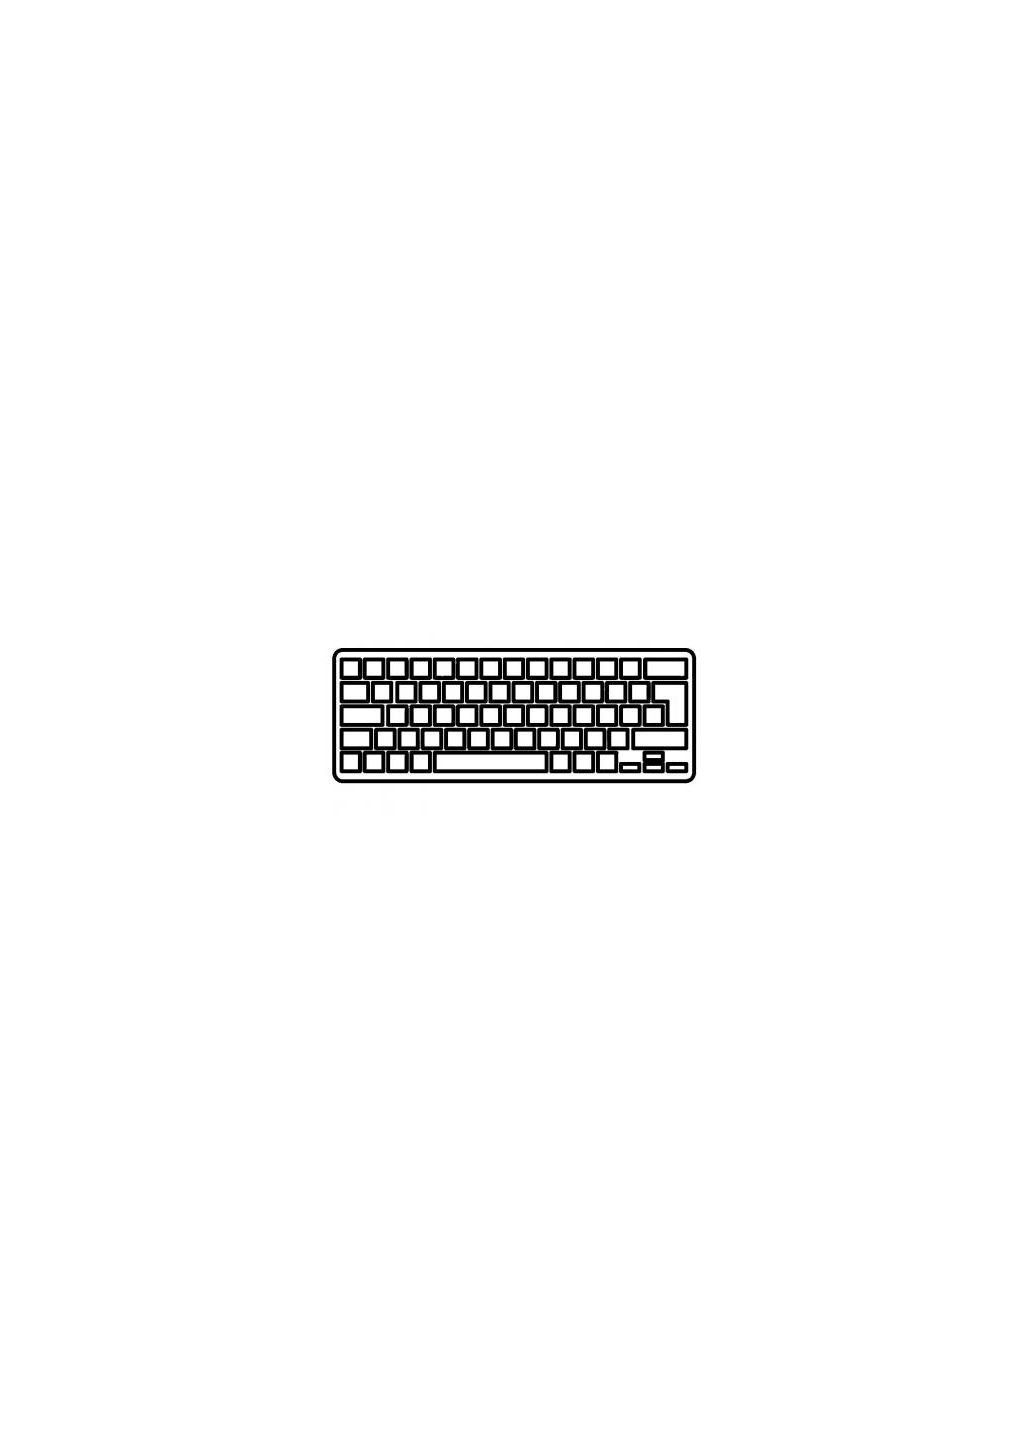 Клавиатура ноутбука (A43188) Acer aspire 4210/4310/4320/4510/4520/4710/4720 серая ua (276707564)